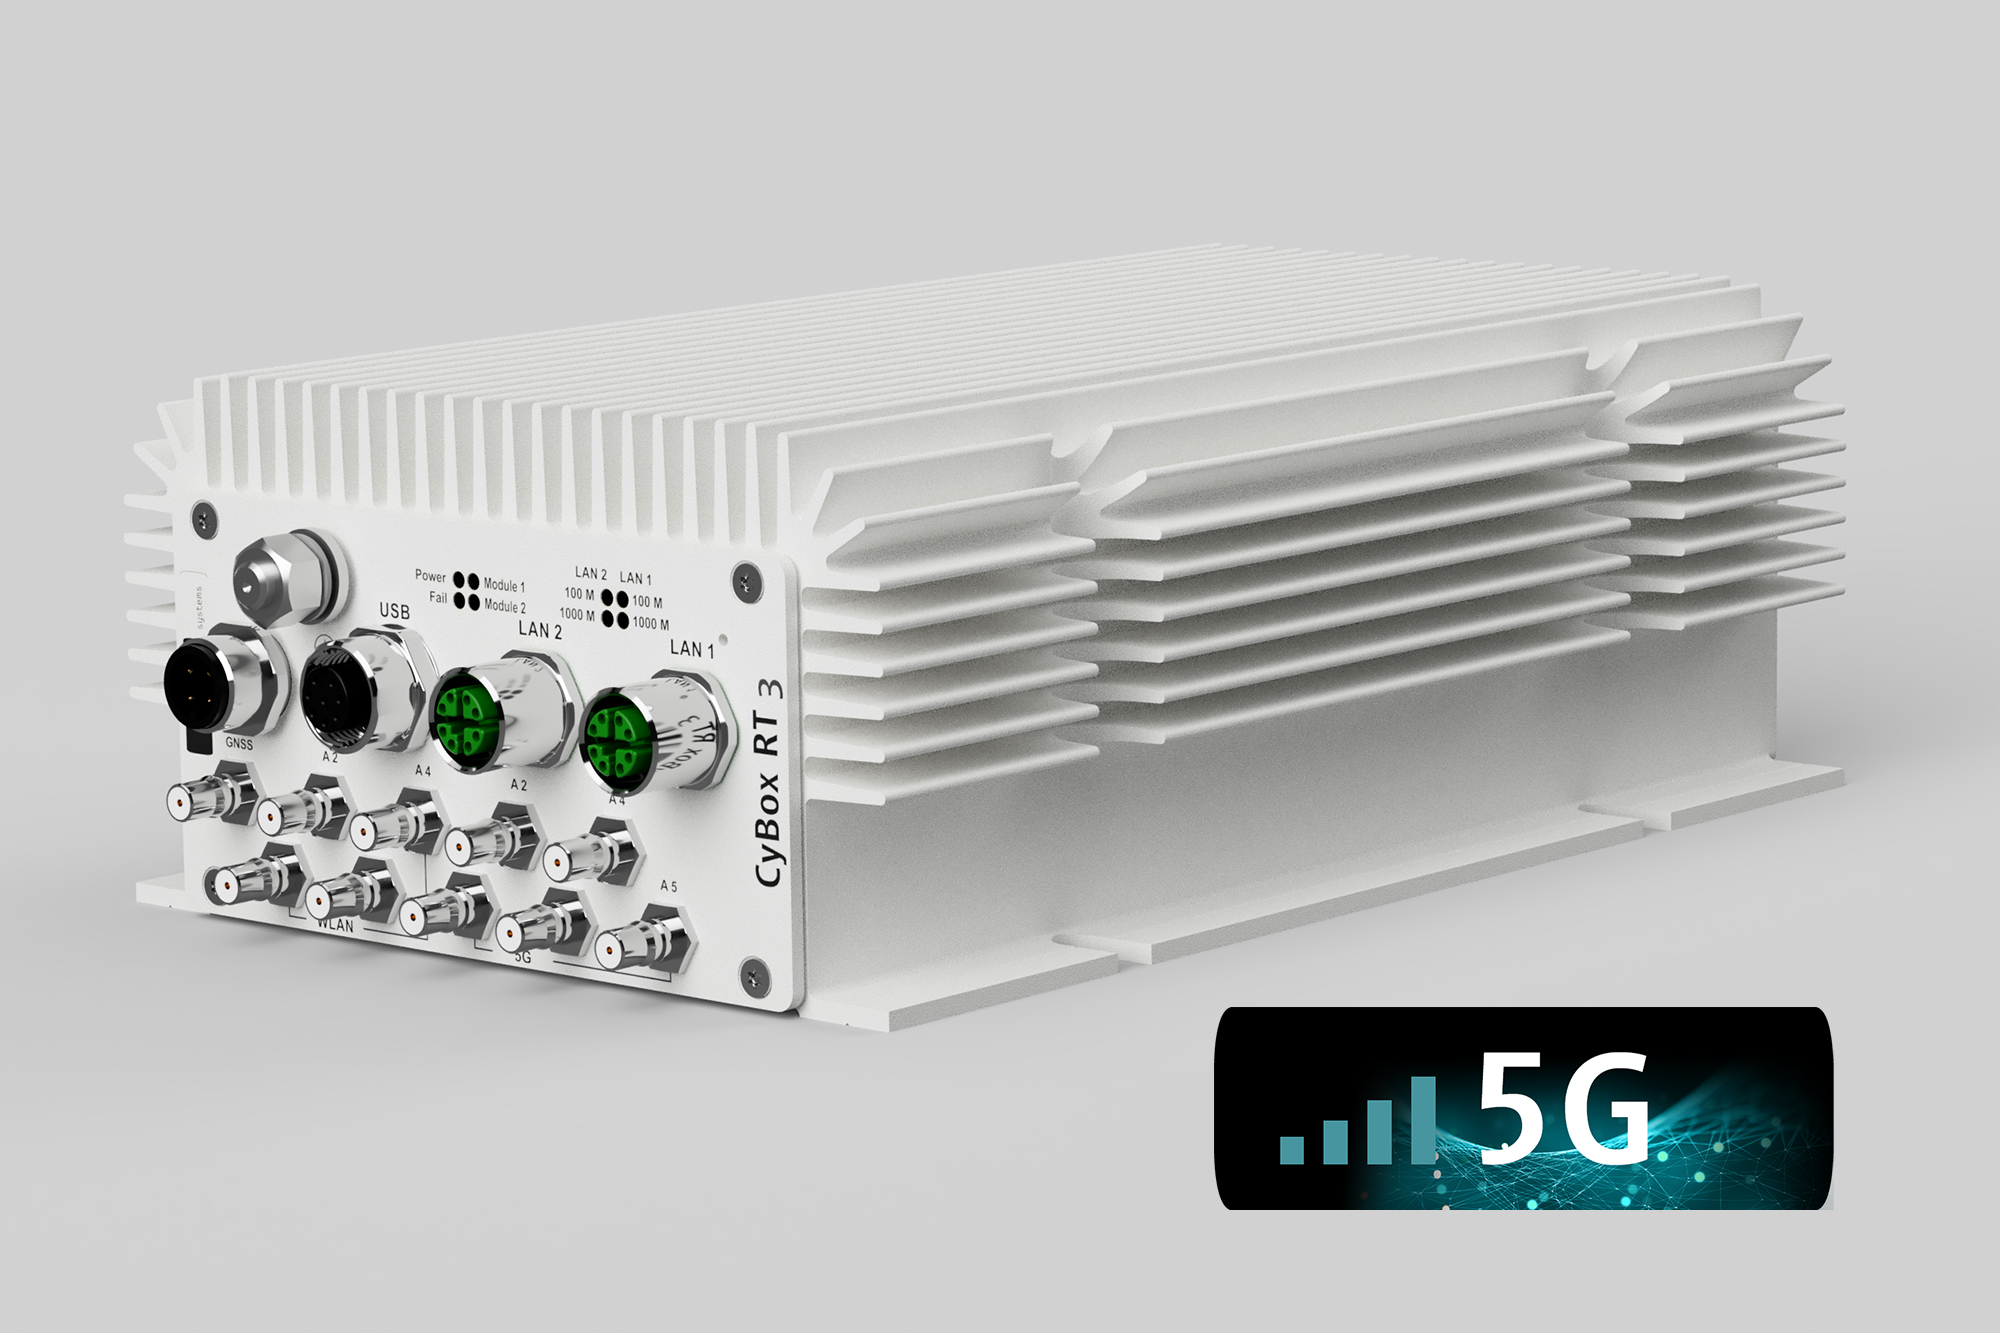 CyBox RT 3-W, ein neuer robuster, wartungsfreier und nach EN 50155 zertifizierter Router für Anwendungen in der Bahntechnik